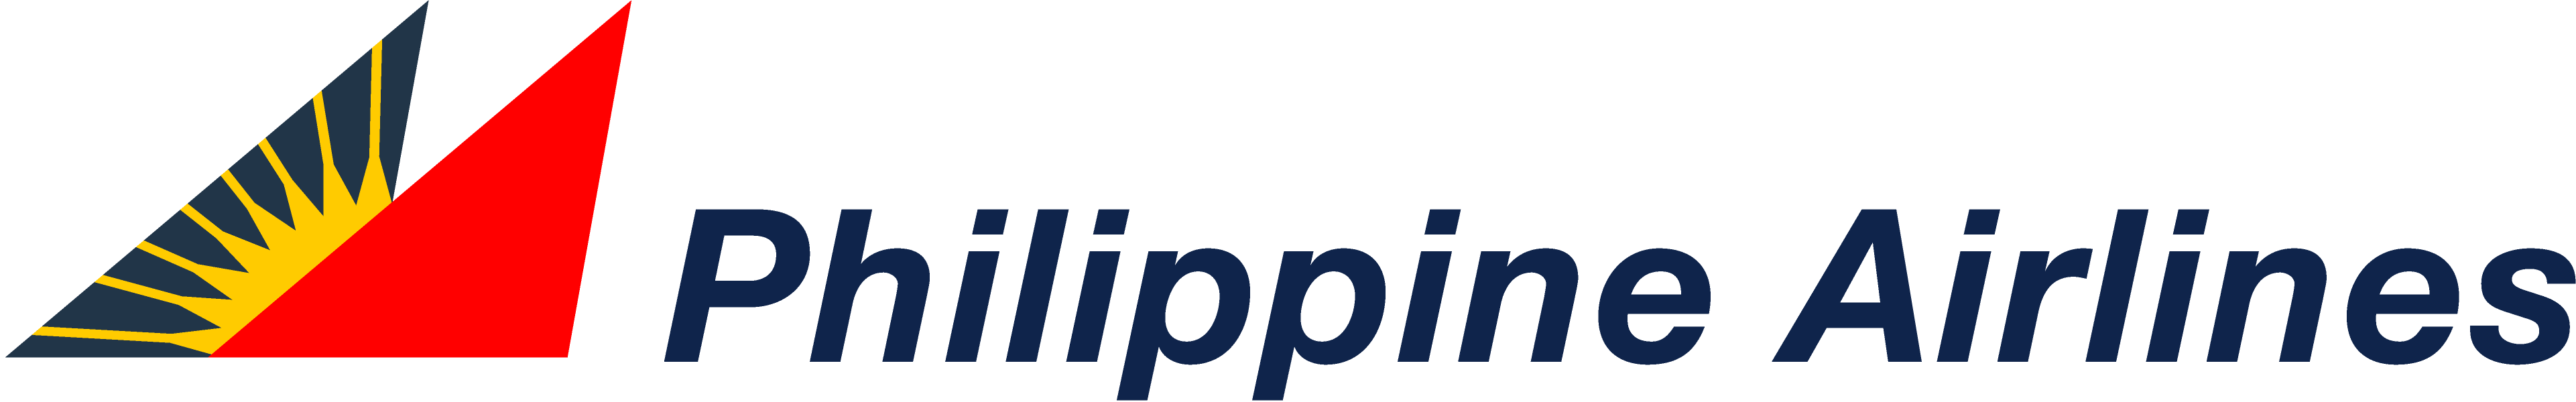 Philippine Airlines Logo Transparent